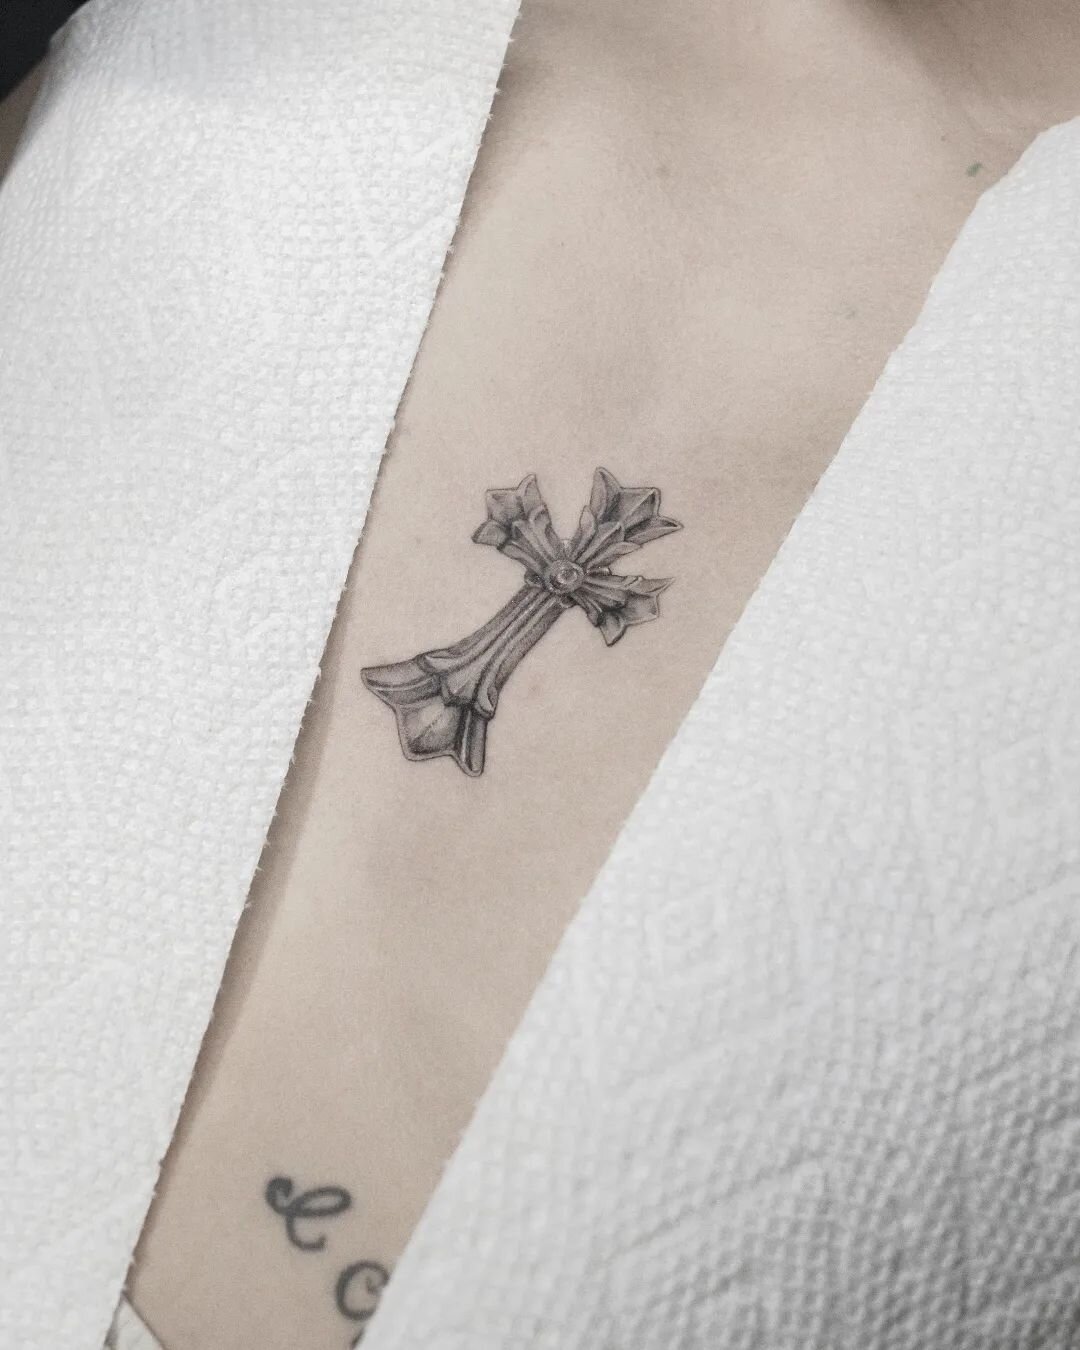 Sternum cross 🐡
&middot;
&middot;
&middot;
&middot;
#finelinetattoo #chromehearts #tattoos #illustration #tattoo #vintageaesthetic #microtattoo #blackwork #minnesotaartist #minneapolis